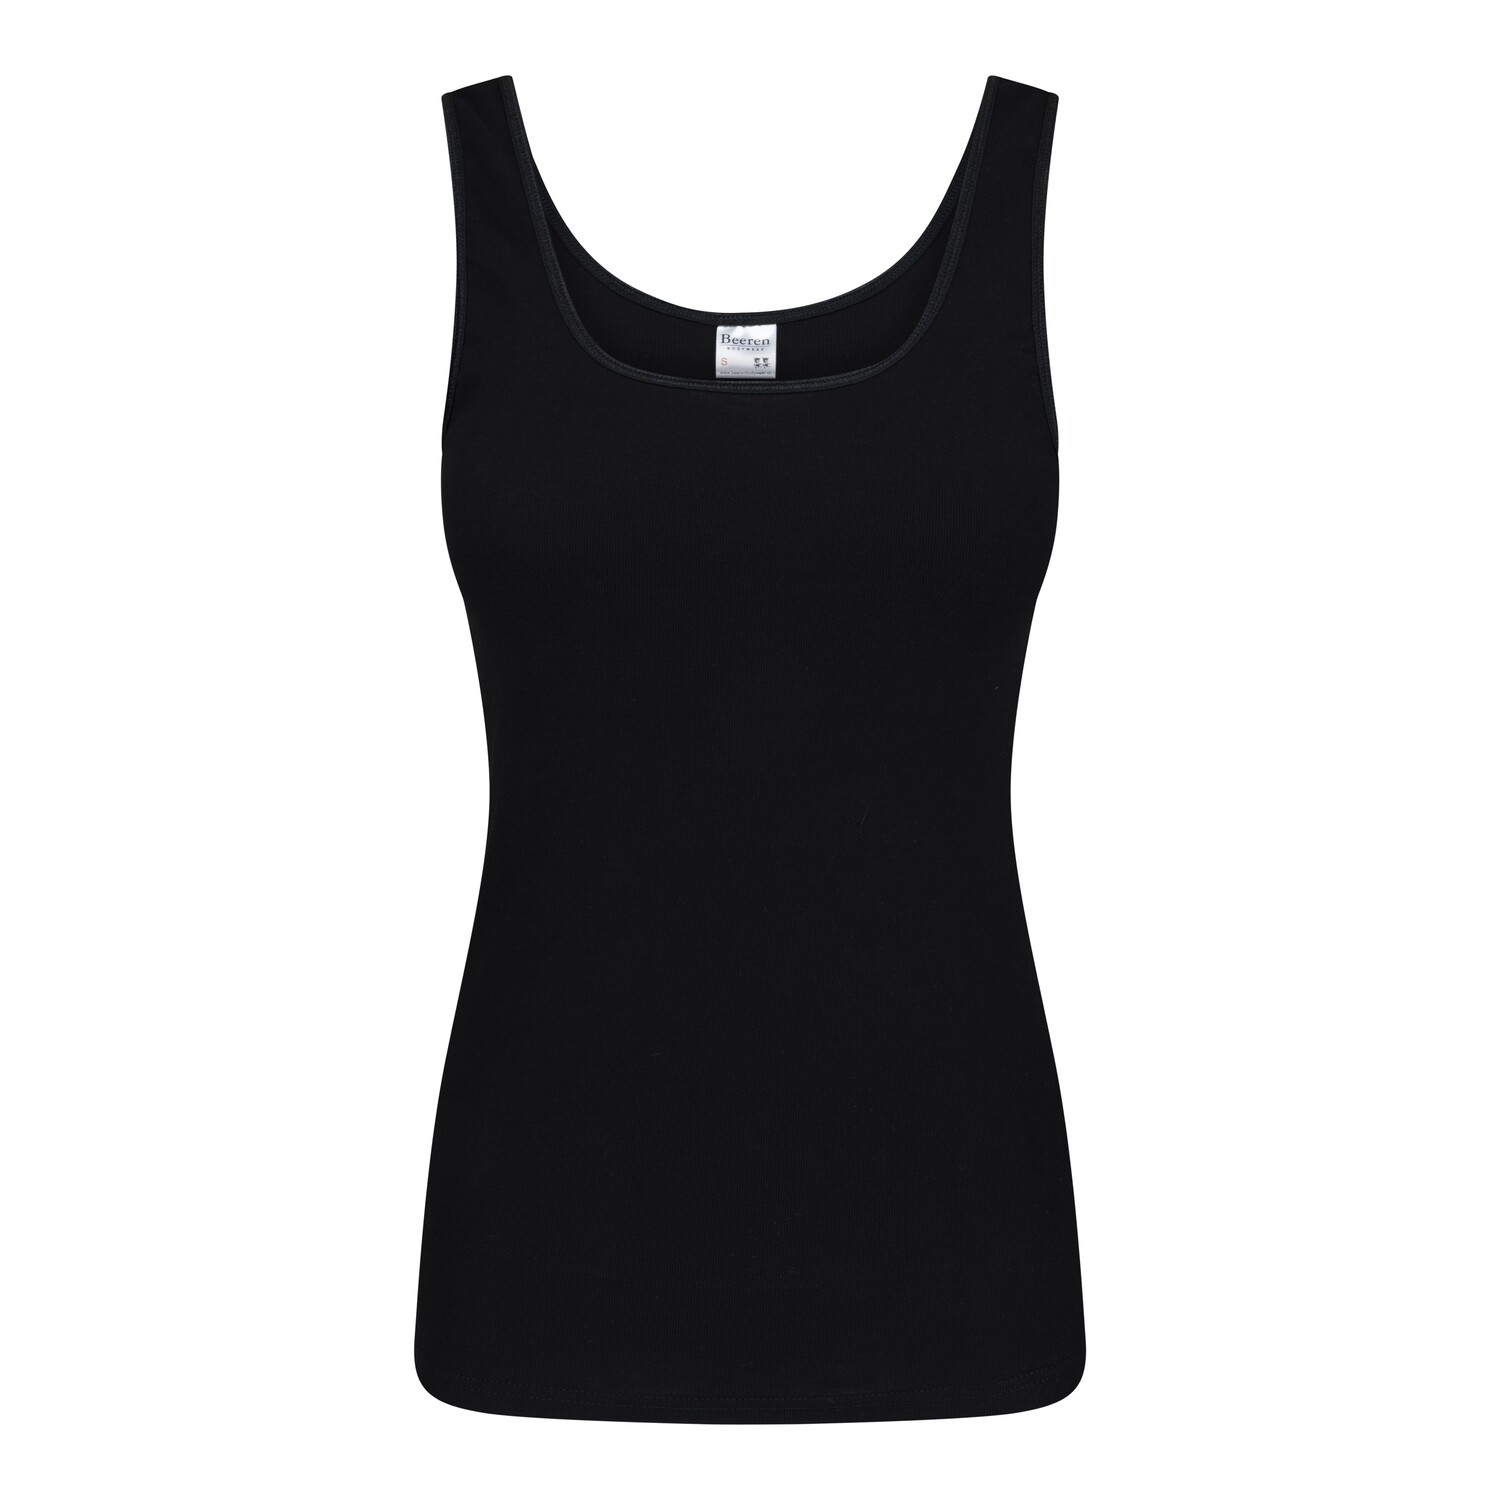 (07-491) Dames hemd Madonna zwart XL, Size: XL, Color: Zwart